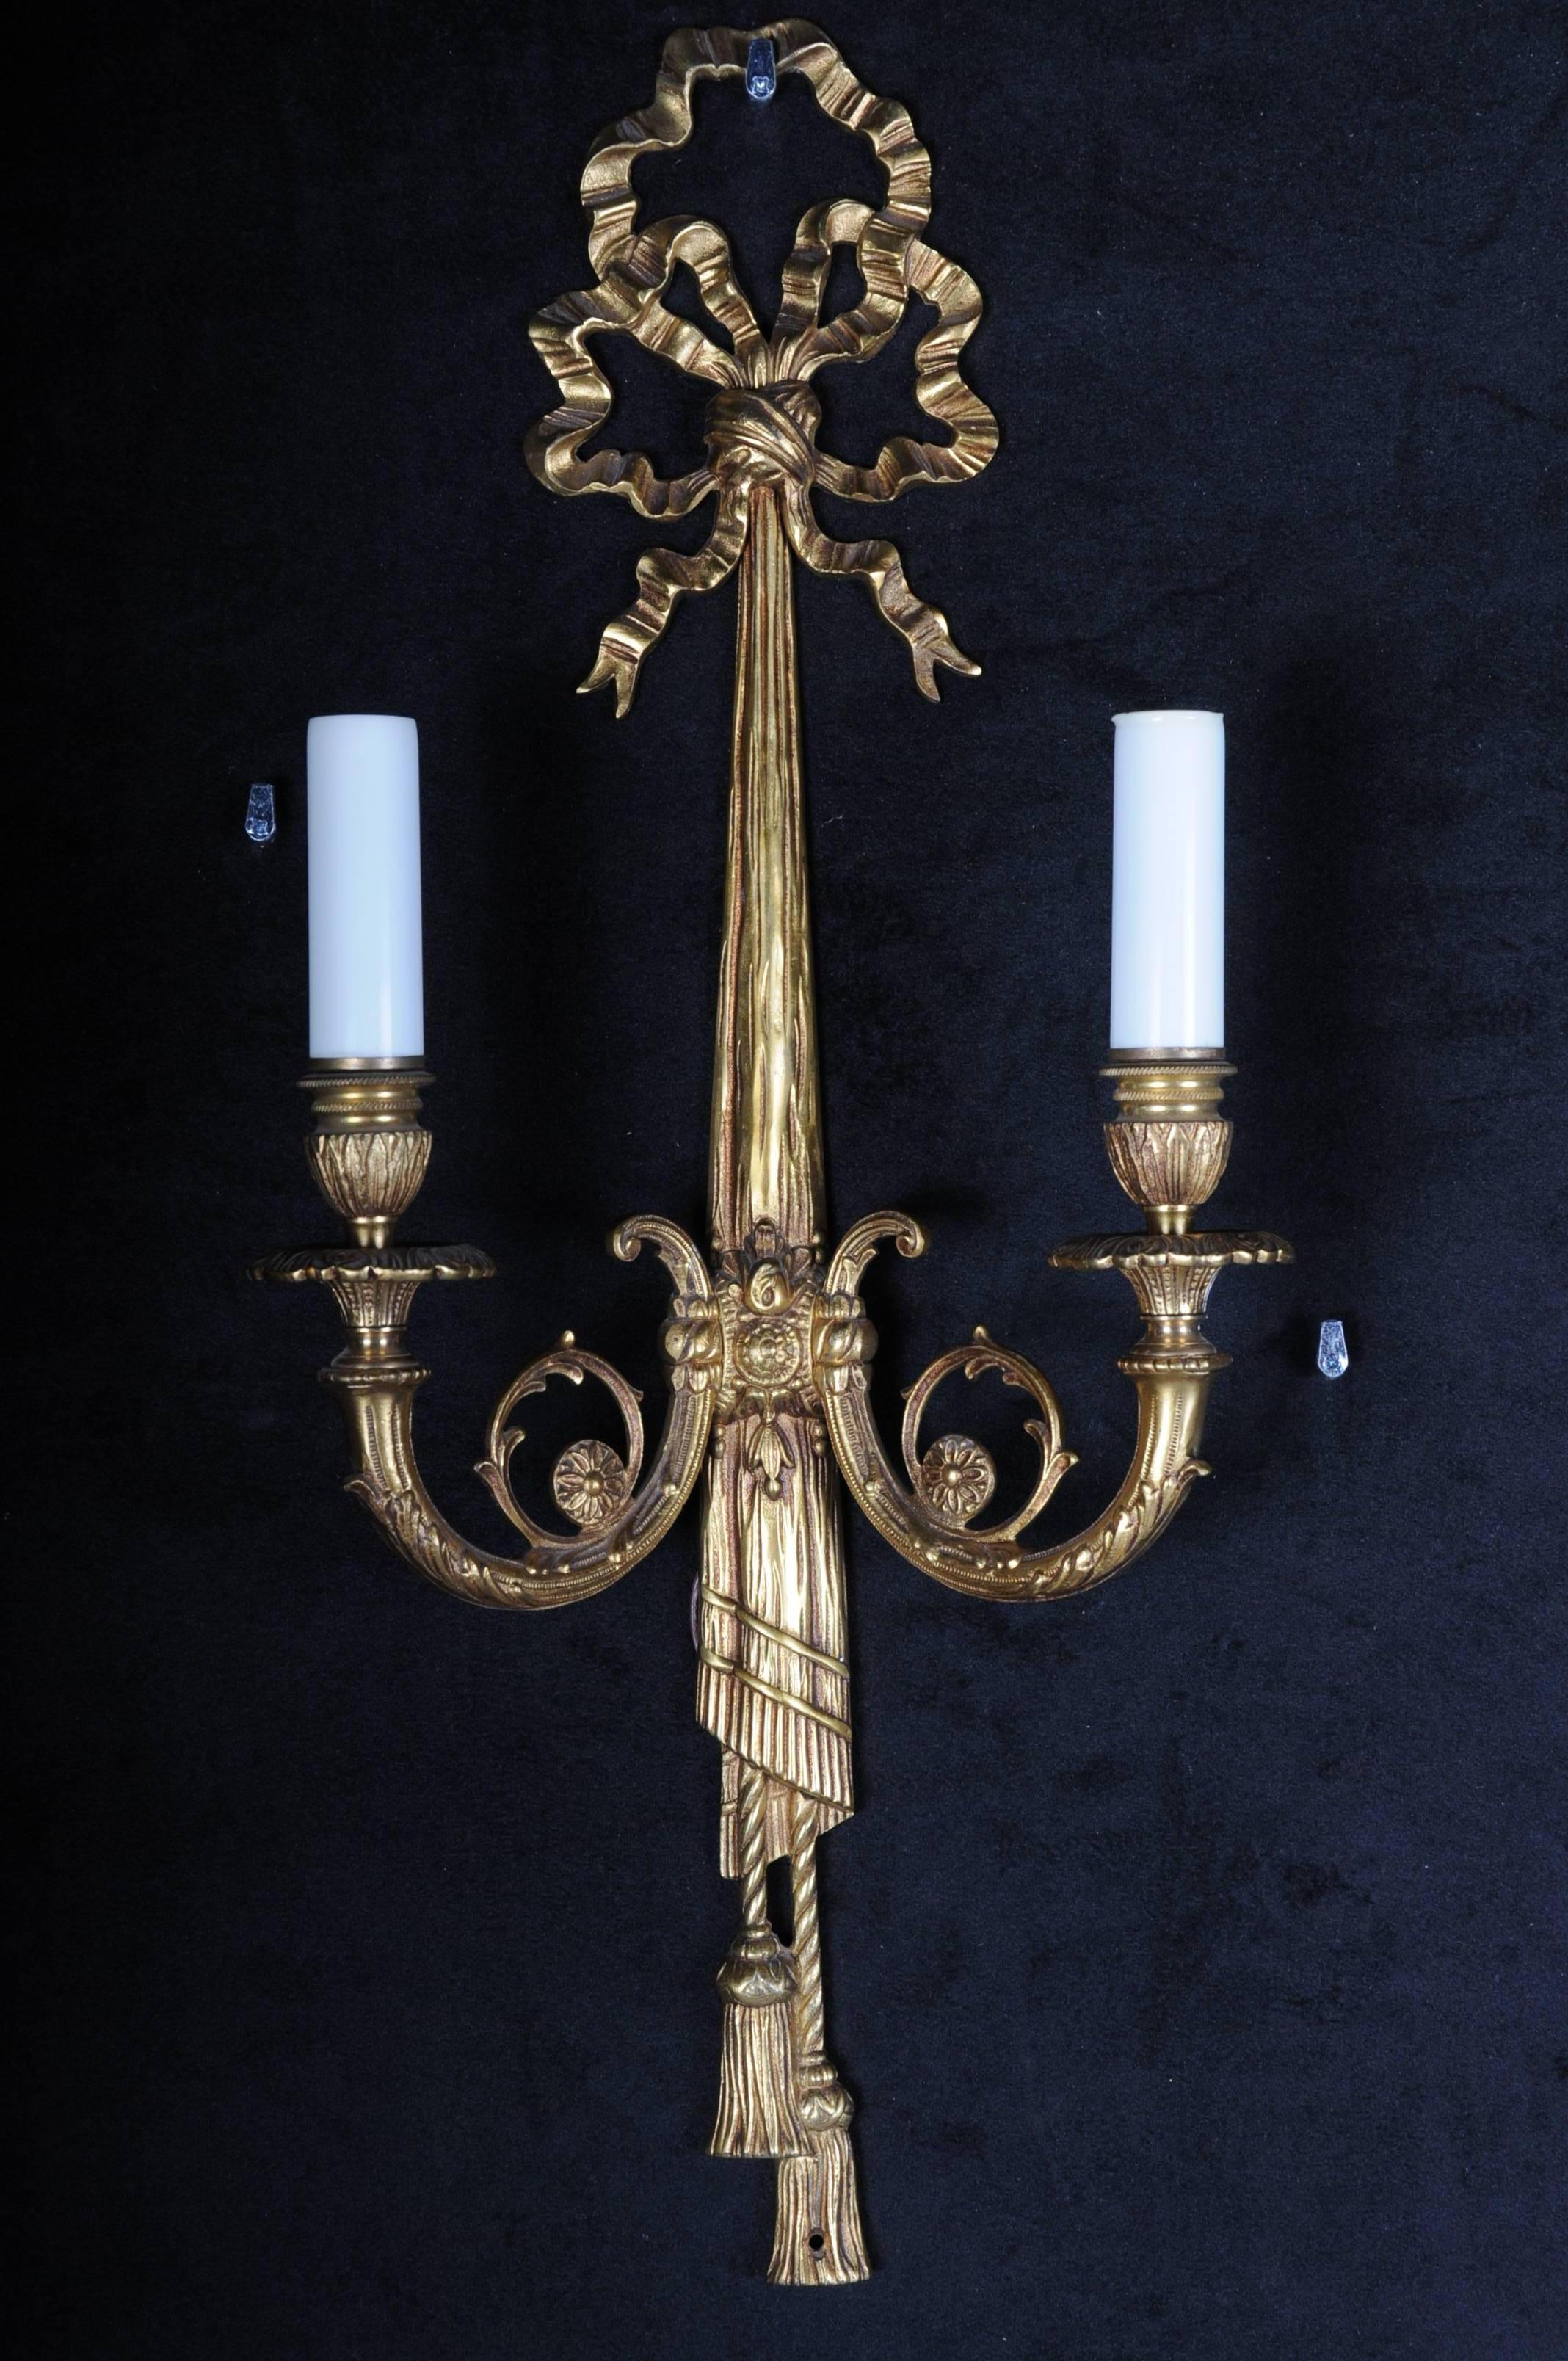 Schöne Wandlampe aus Bronze im Louis XVI-Stil

Zwei Flammen. Massive Bronze. Die Lampe wird von einer Kunststoffschleife gekrönt. Elektrifiziert.

(F-82).